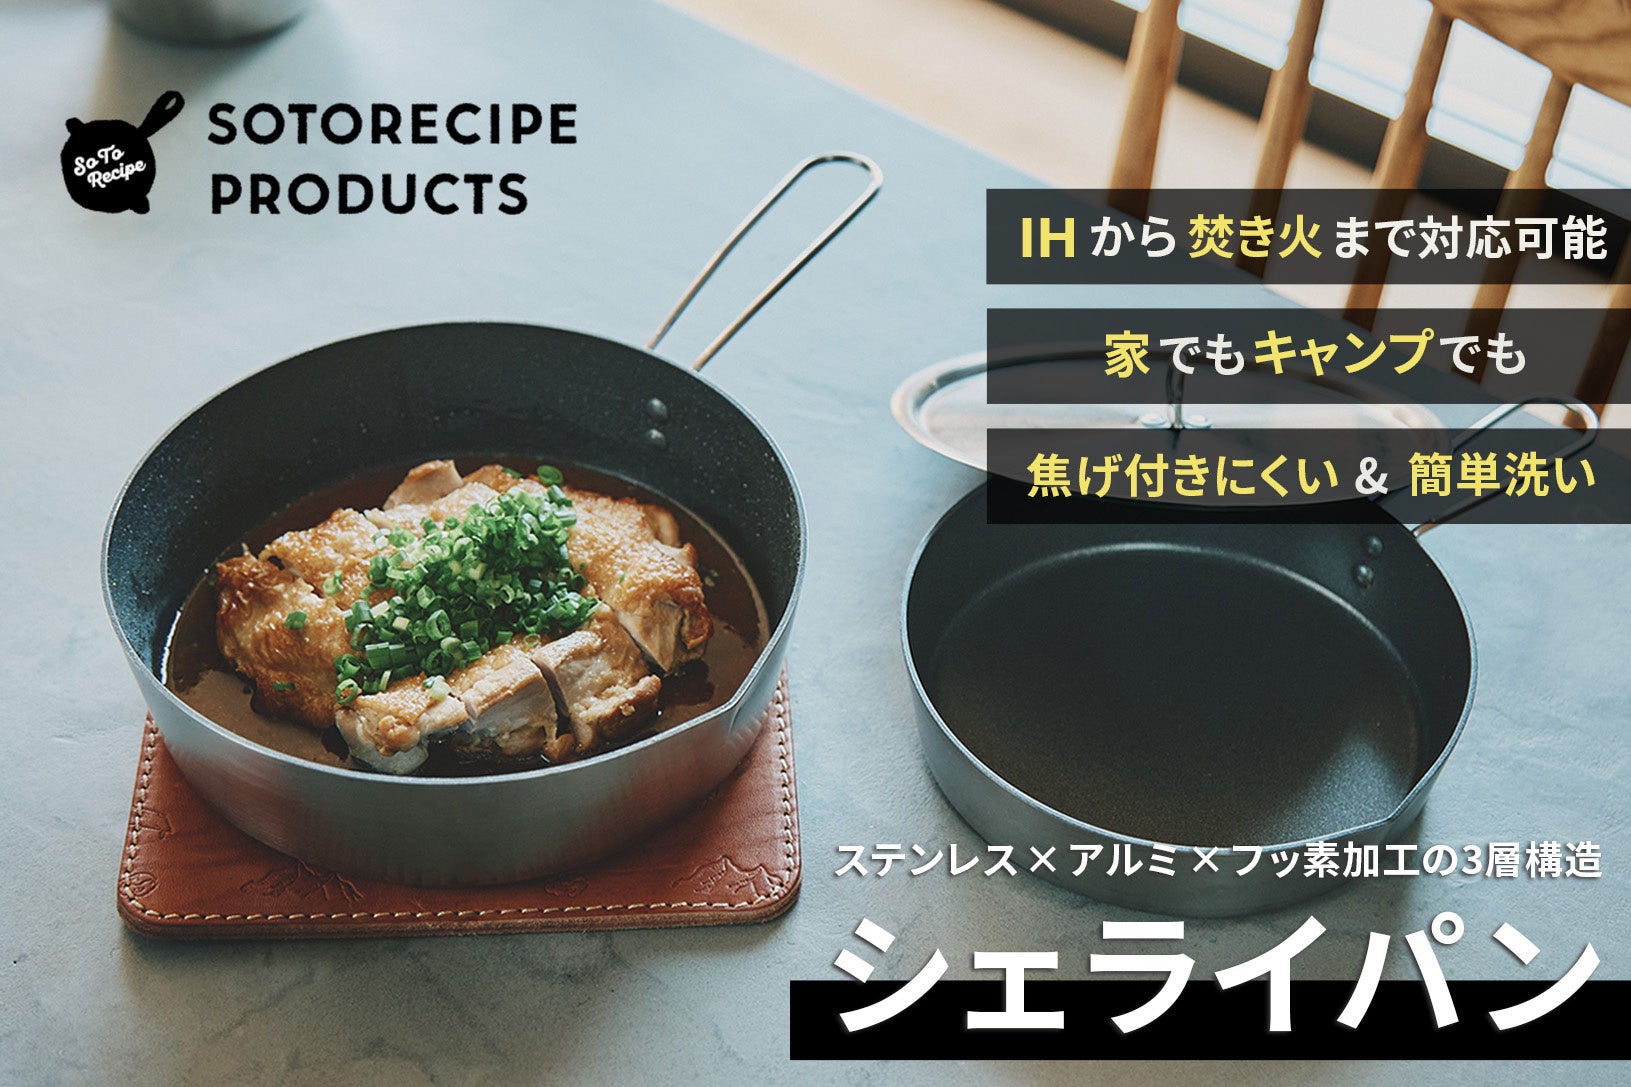 日本の職人技術を凝縮した“ウチ・ソト二刀流”調理器具